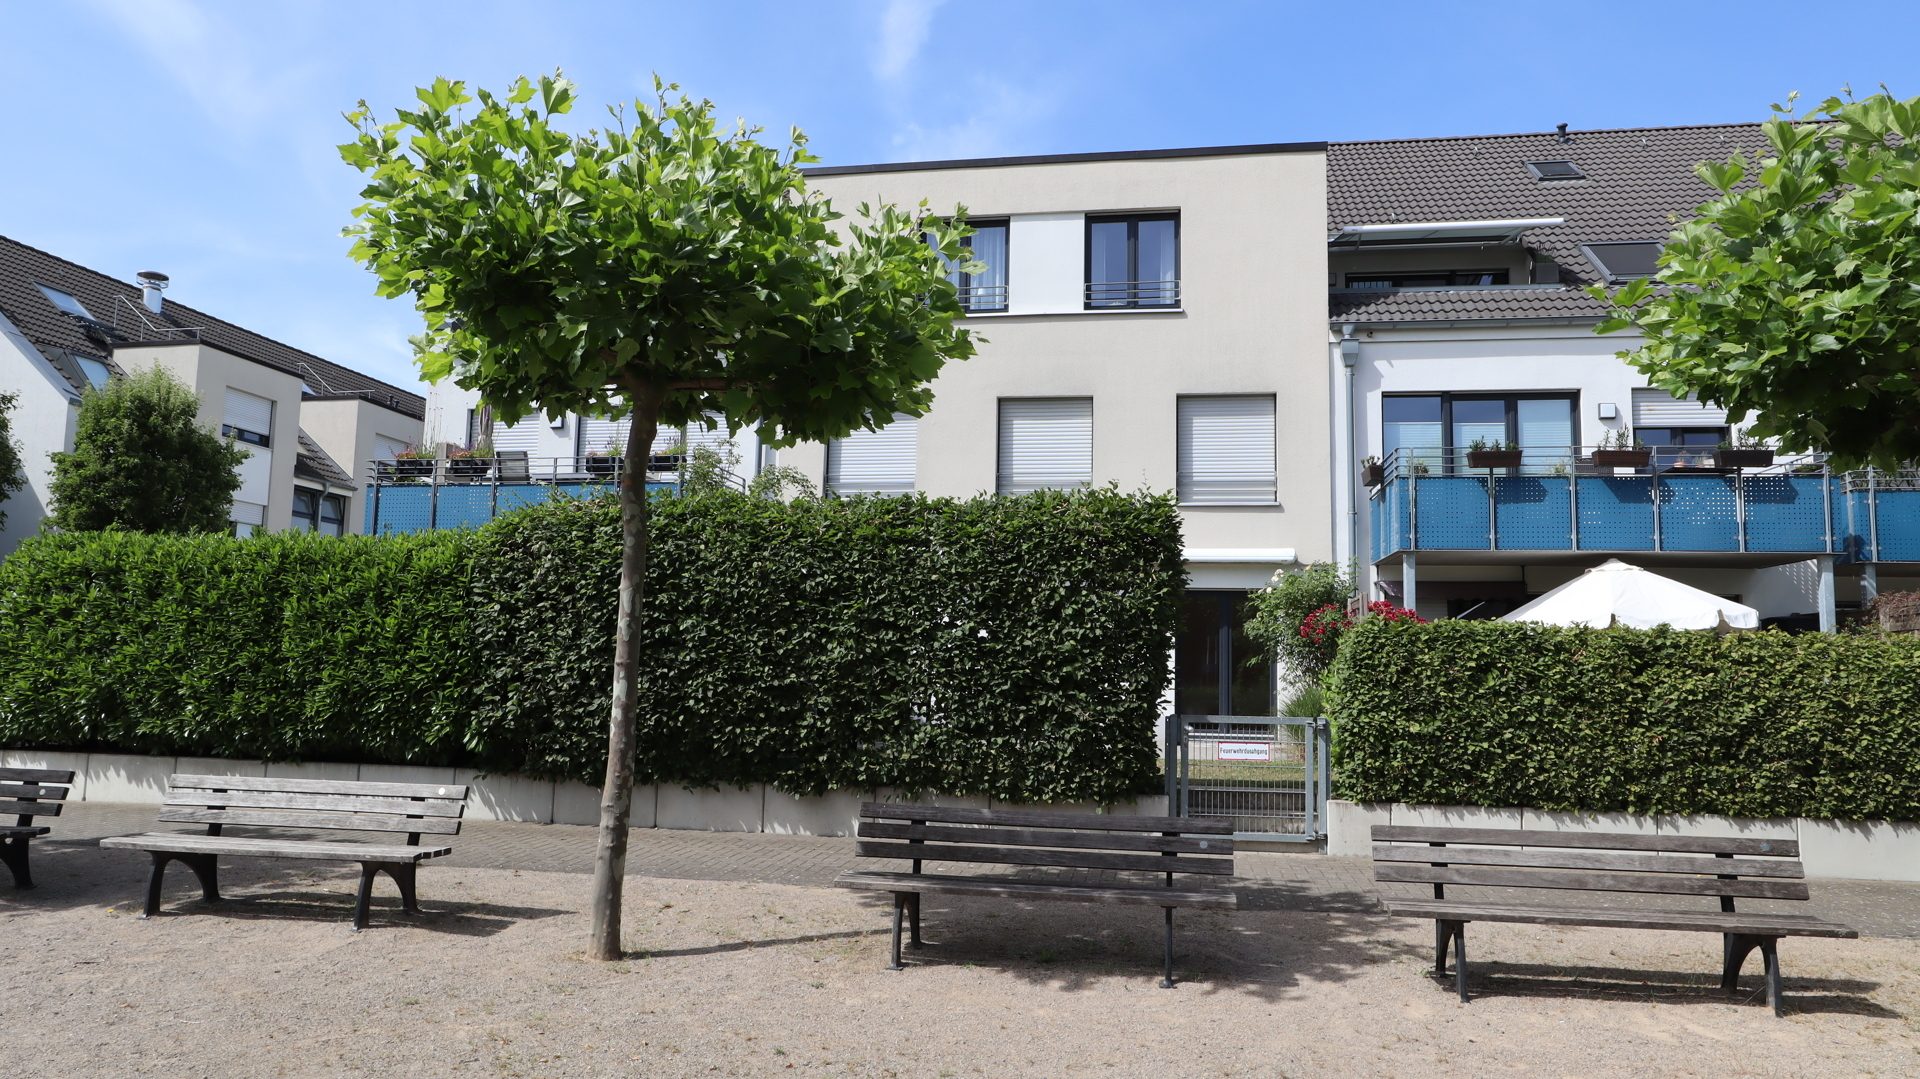 Böcker Wohnimmobilien - Immobilienangebot - Düsseldorf / Wittlaer - Alle - 4-Zimmerwohnung im Maisonette-Stil. Erdgeschoss. Terrasse mit Garten